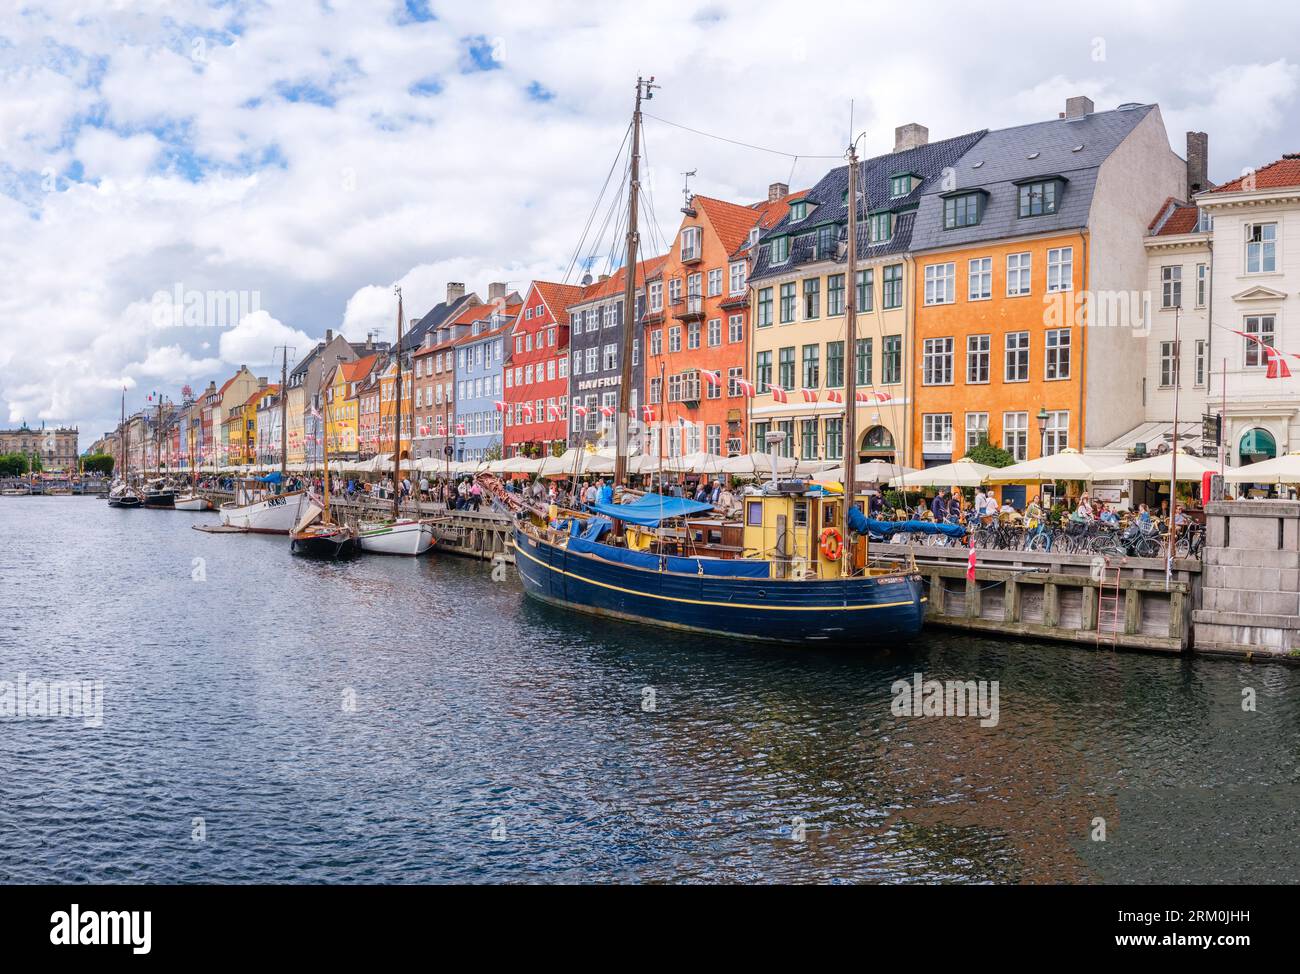 Kopenhagen, Dänemark - 8. August 2023: Der berühmteste Kanal Kopenhagens mit seinen malerischen bunten Häusern mit Blick auf die angelegten Segelboote. Stockfoto